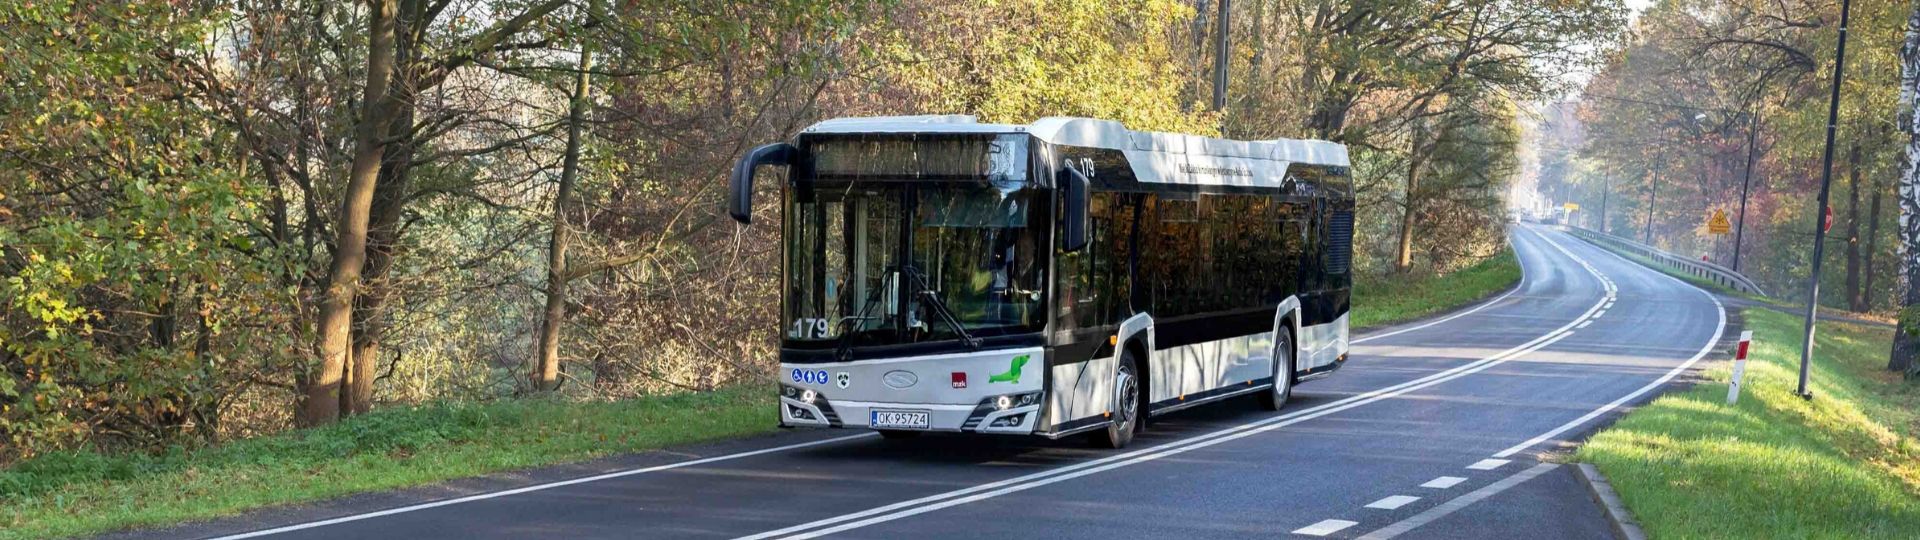 Umweltfreundliche Solaris-Busse fahren nach Kroatien